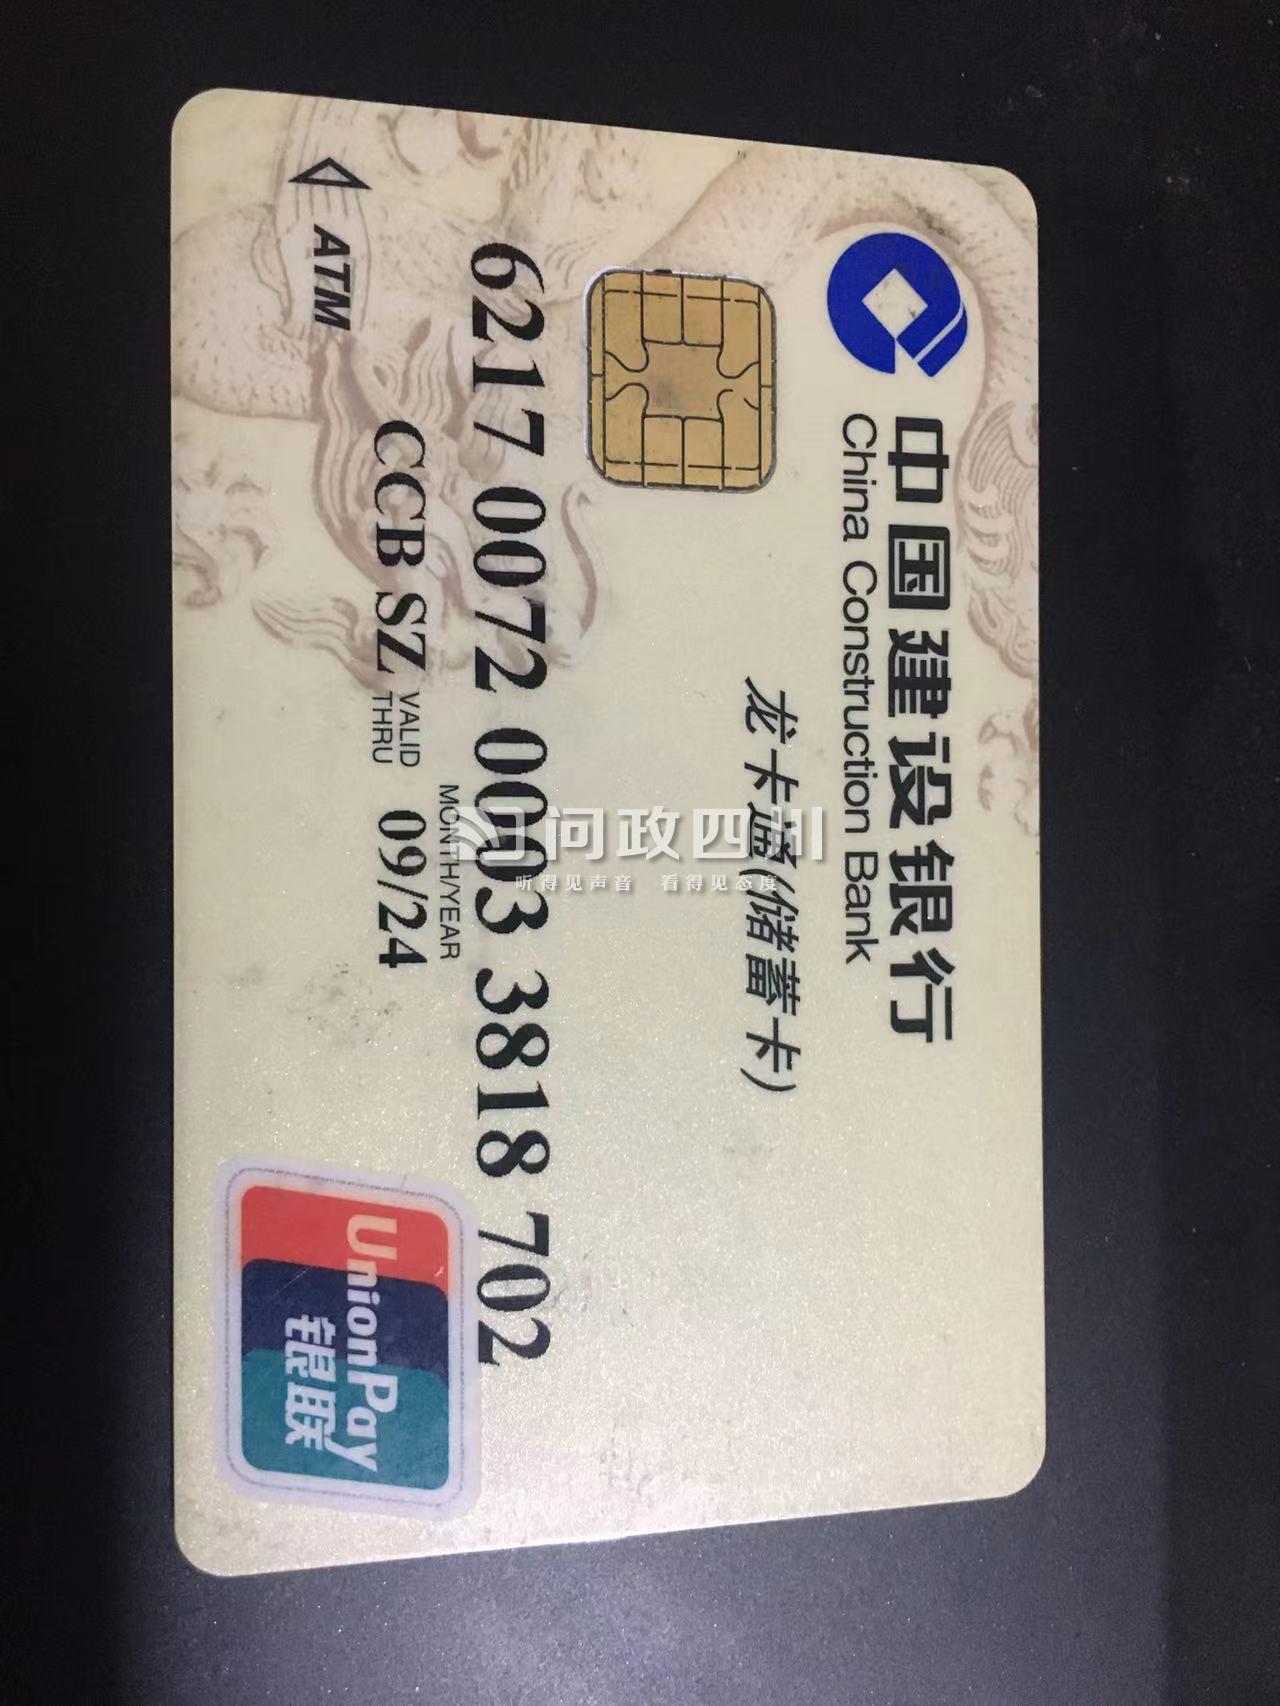 我是广东深圳上班族,11月21日吃中饭发现本人工资卡建设银行卡不能